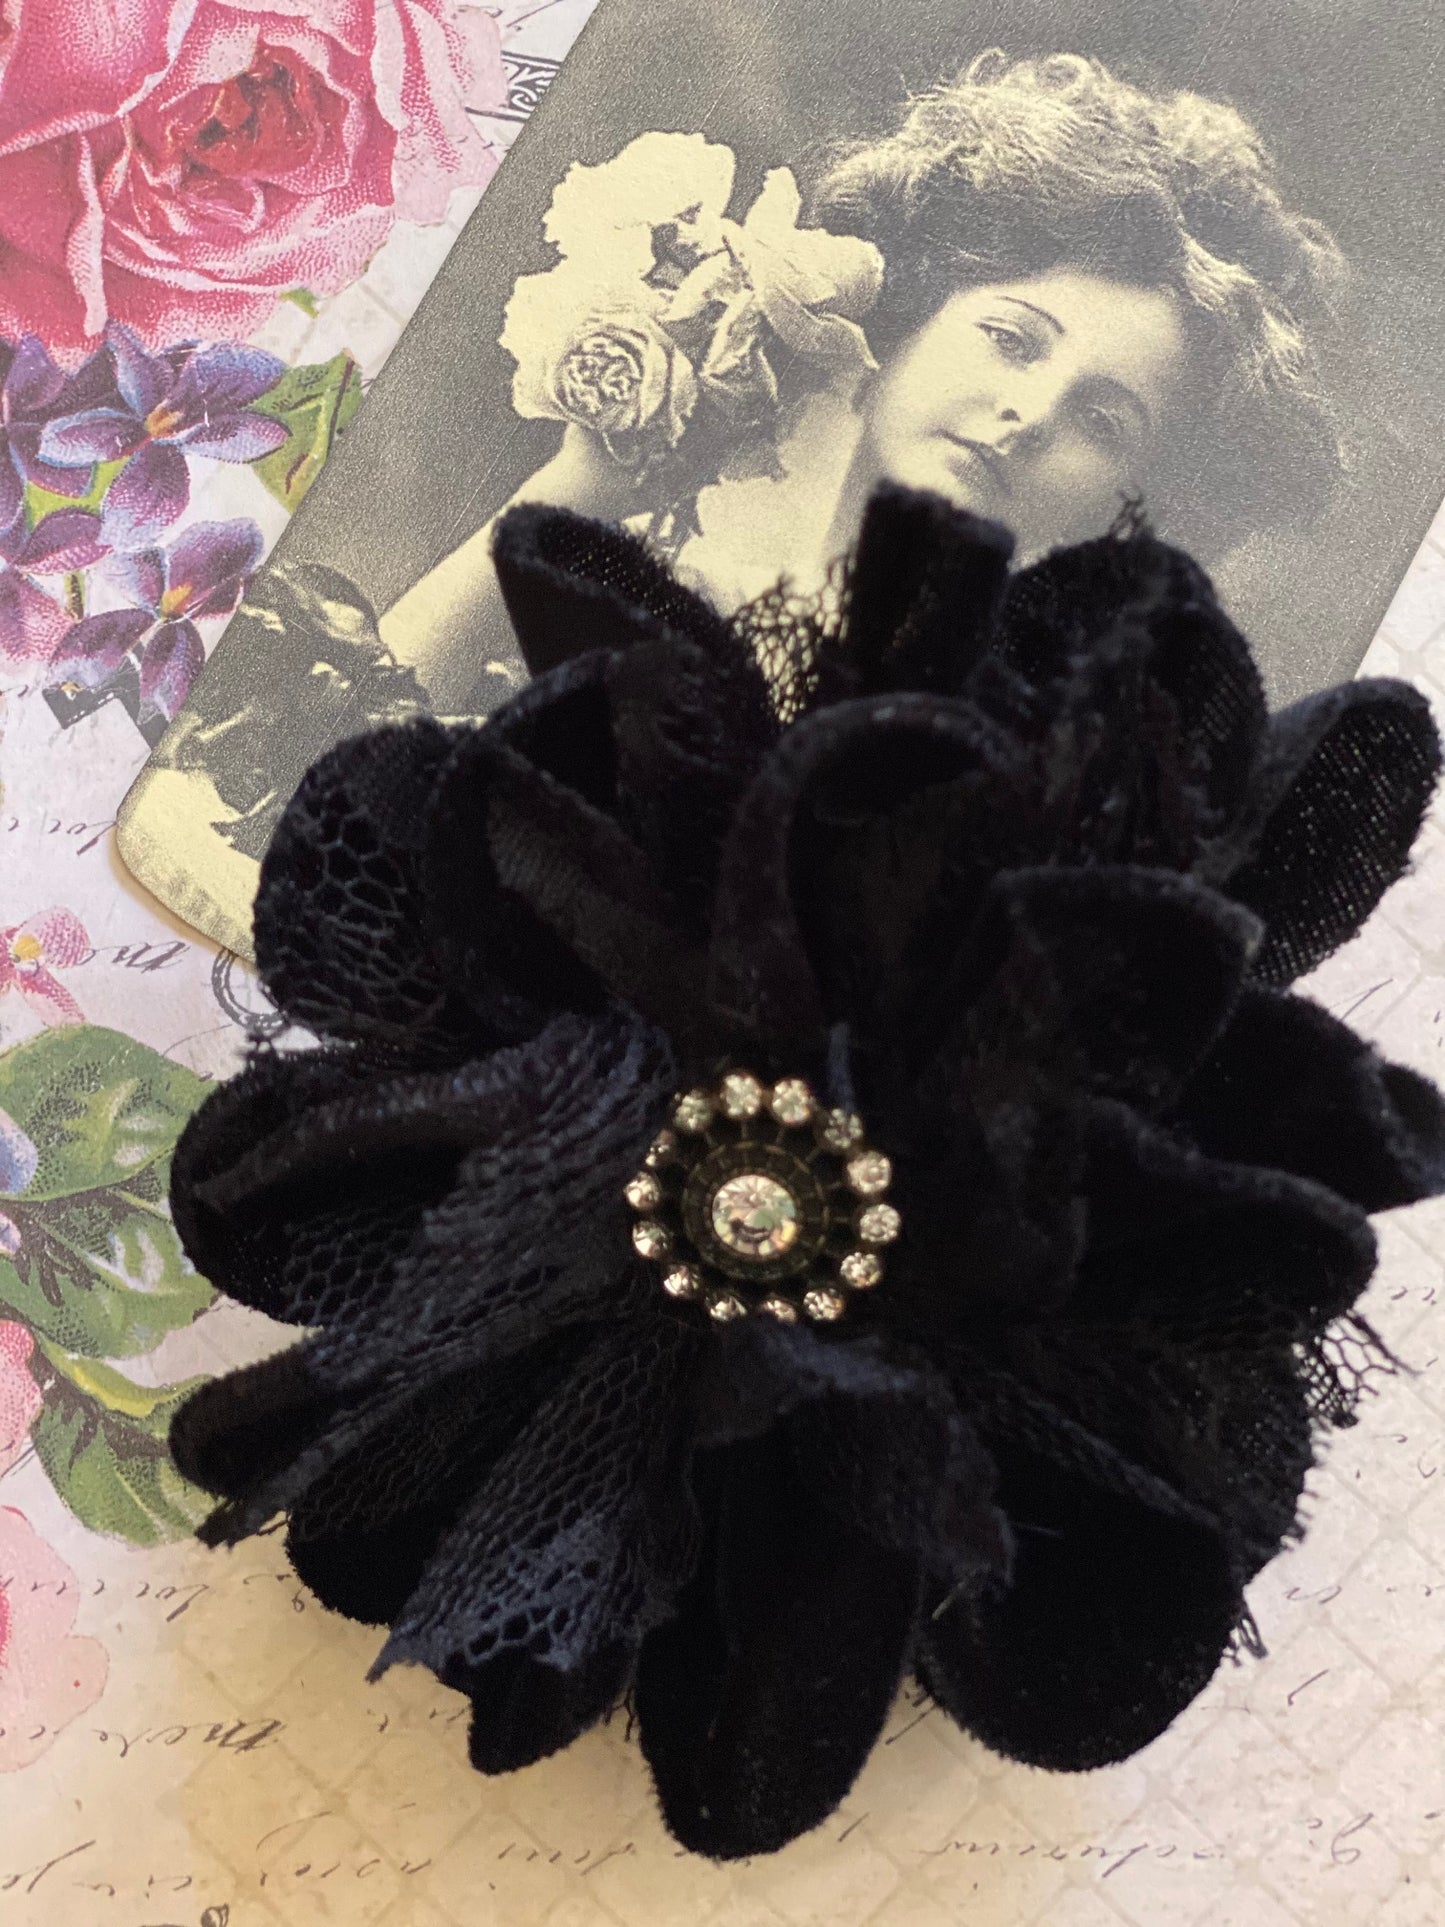 velvet flower brooch. Black.